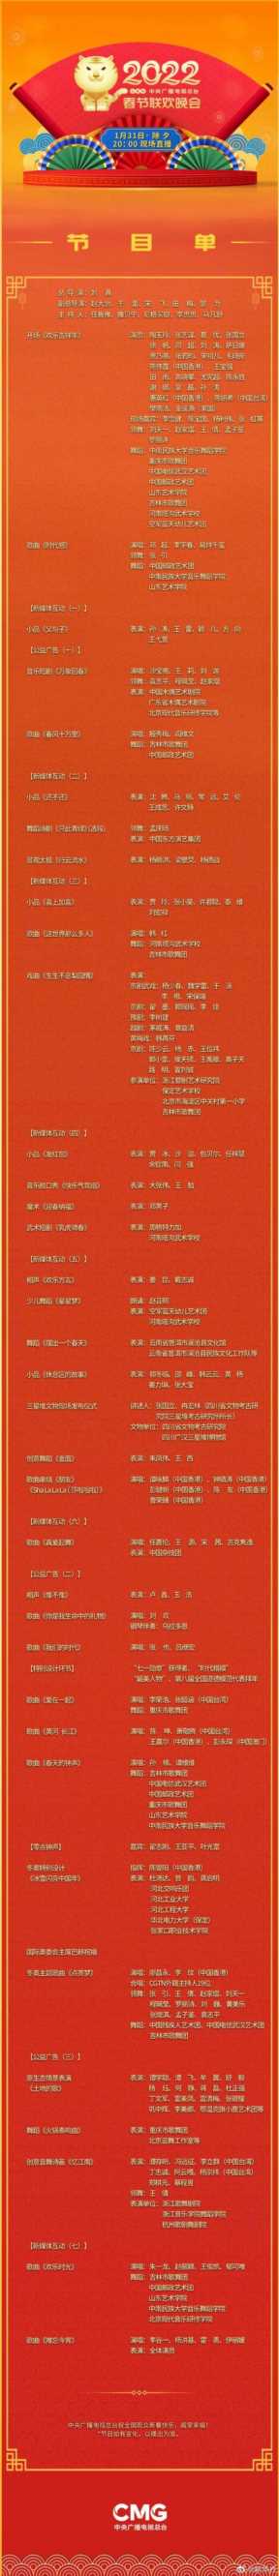 022年中央电视台春节联欢晚会"